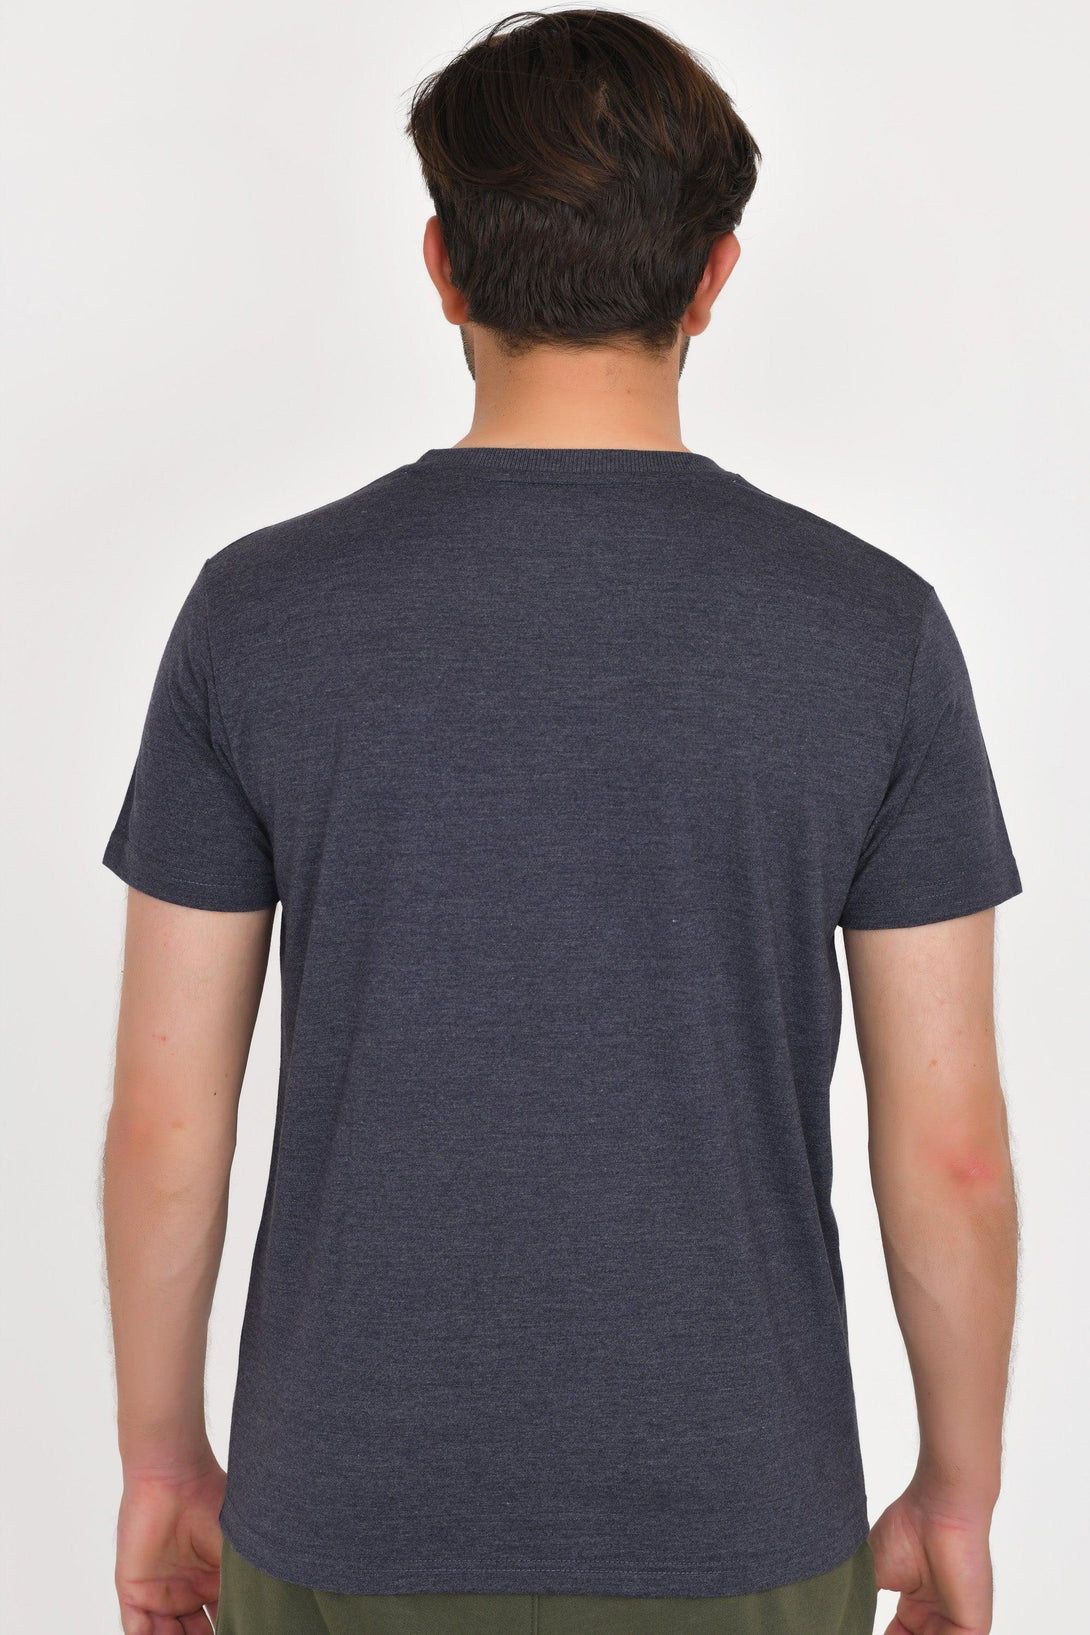 Round Neck T-Shirts | NAVY MELANGE - SLATE - HUNTER GREEN - Pack of 3 - FTS